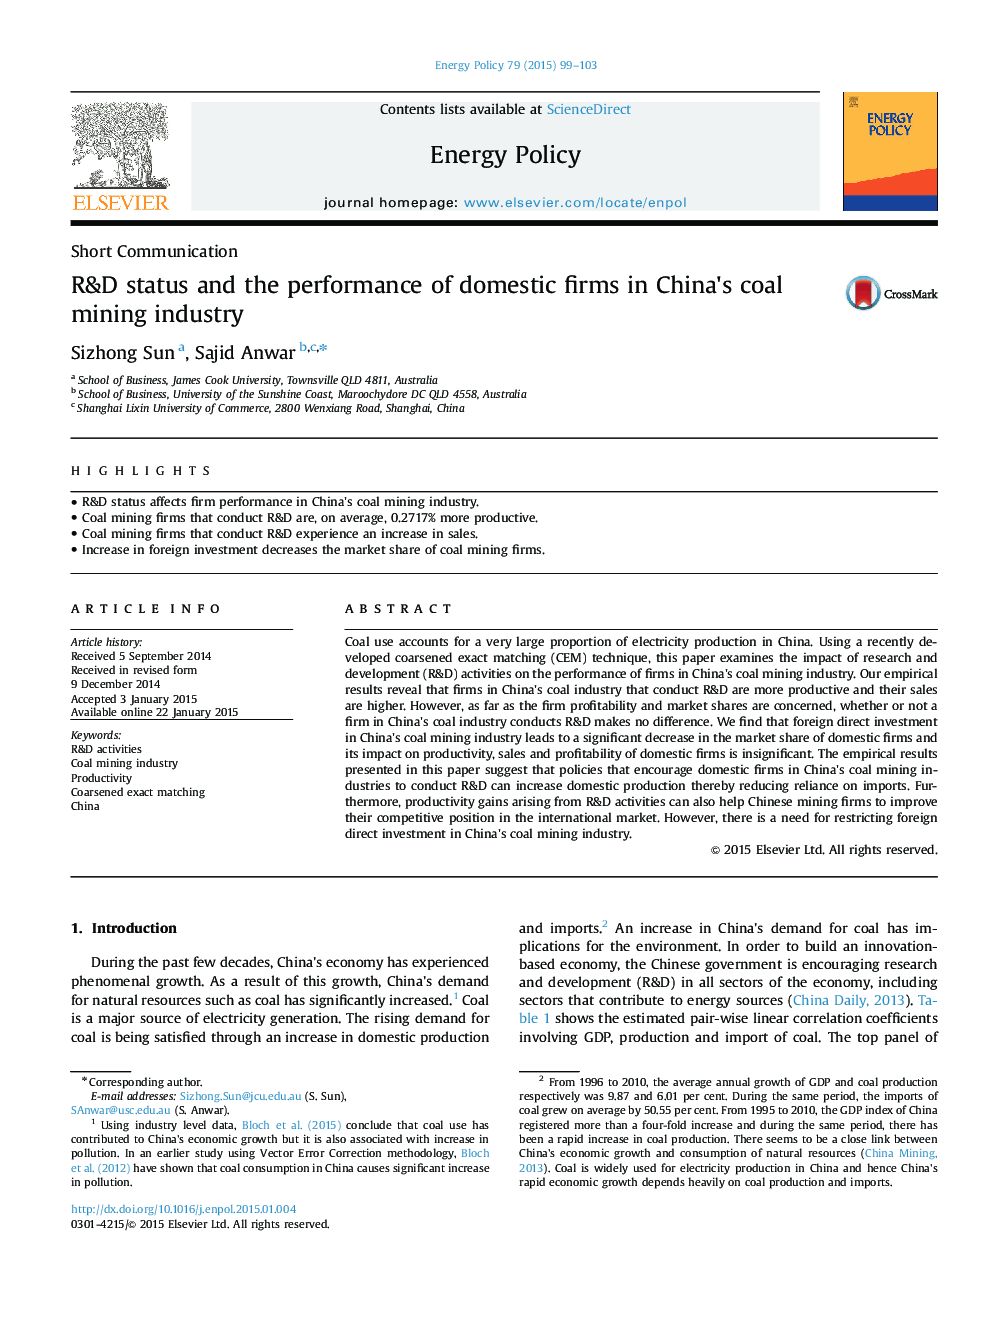 وضعیت تحقیق و توسعه و عملکرد شرکت های داخلی در صنعت معدن زغال سنگ چین 